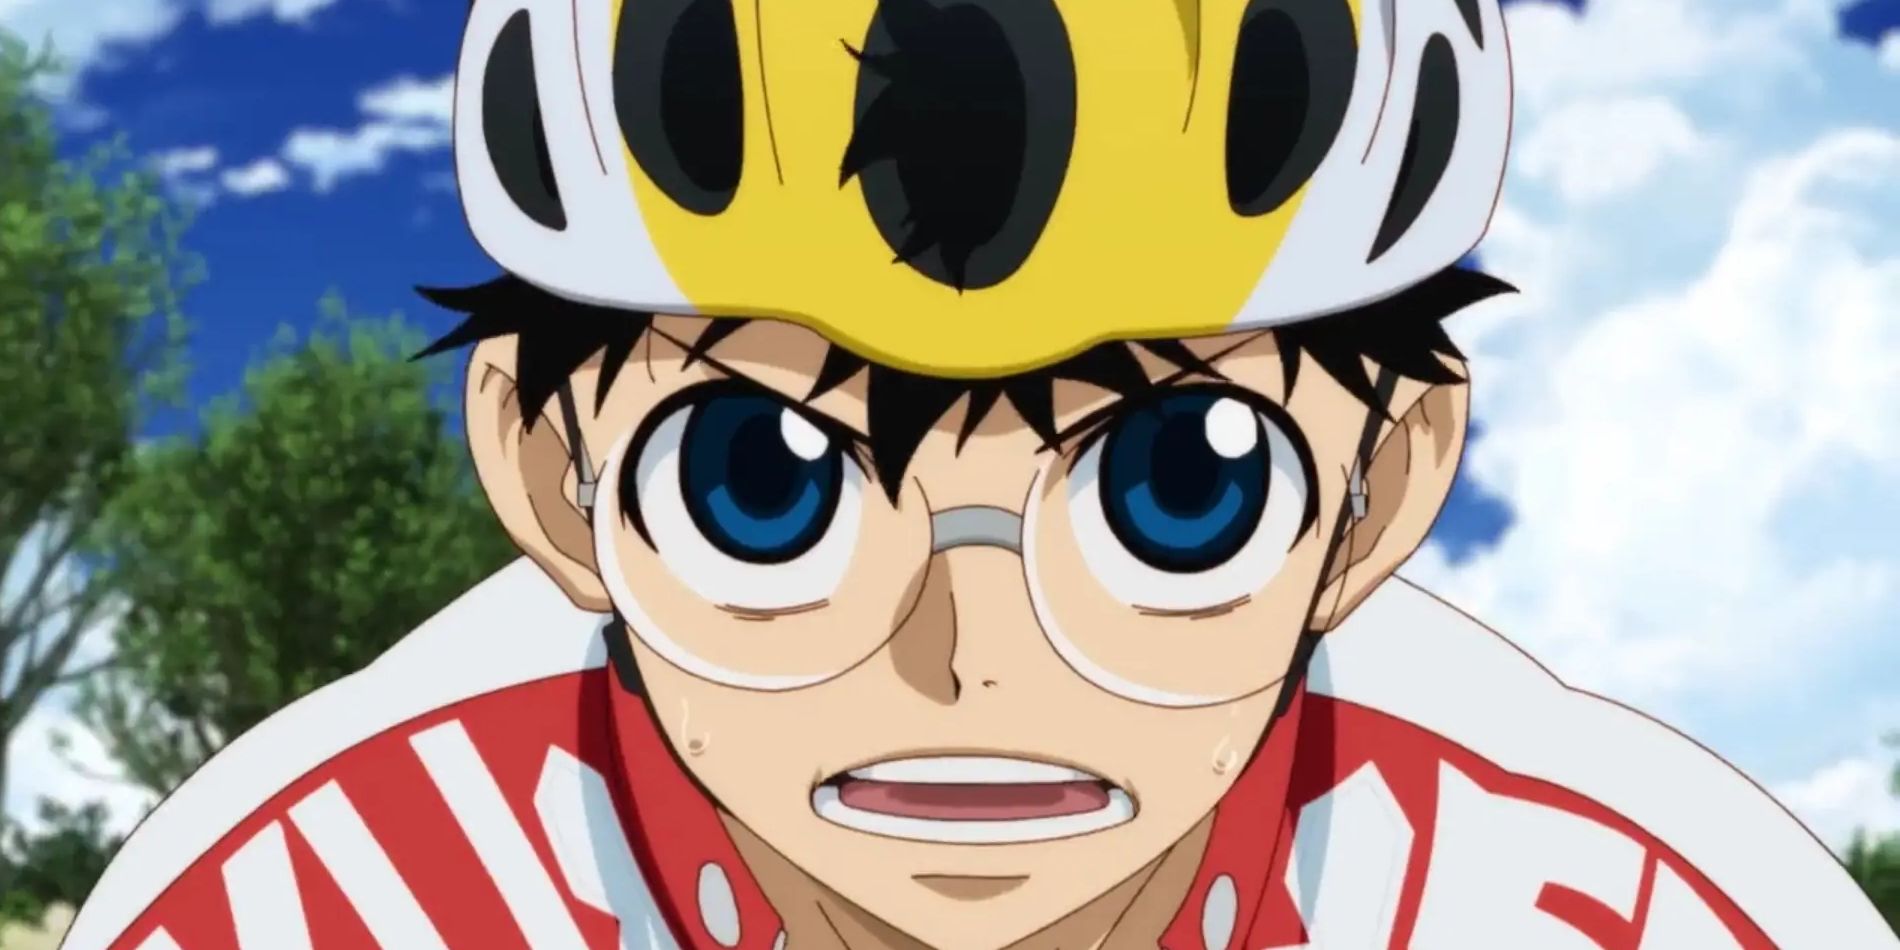 Yowamushi Pedal anime